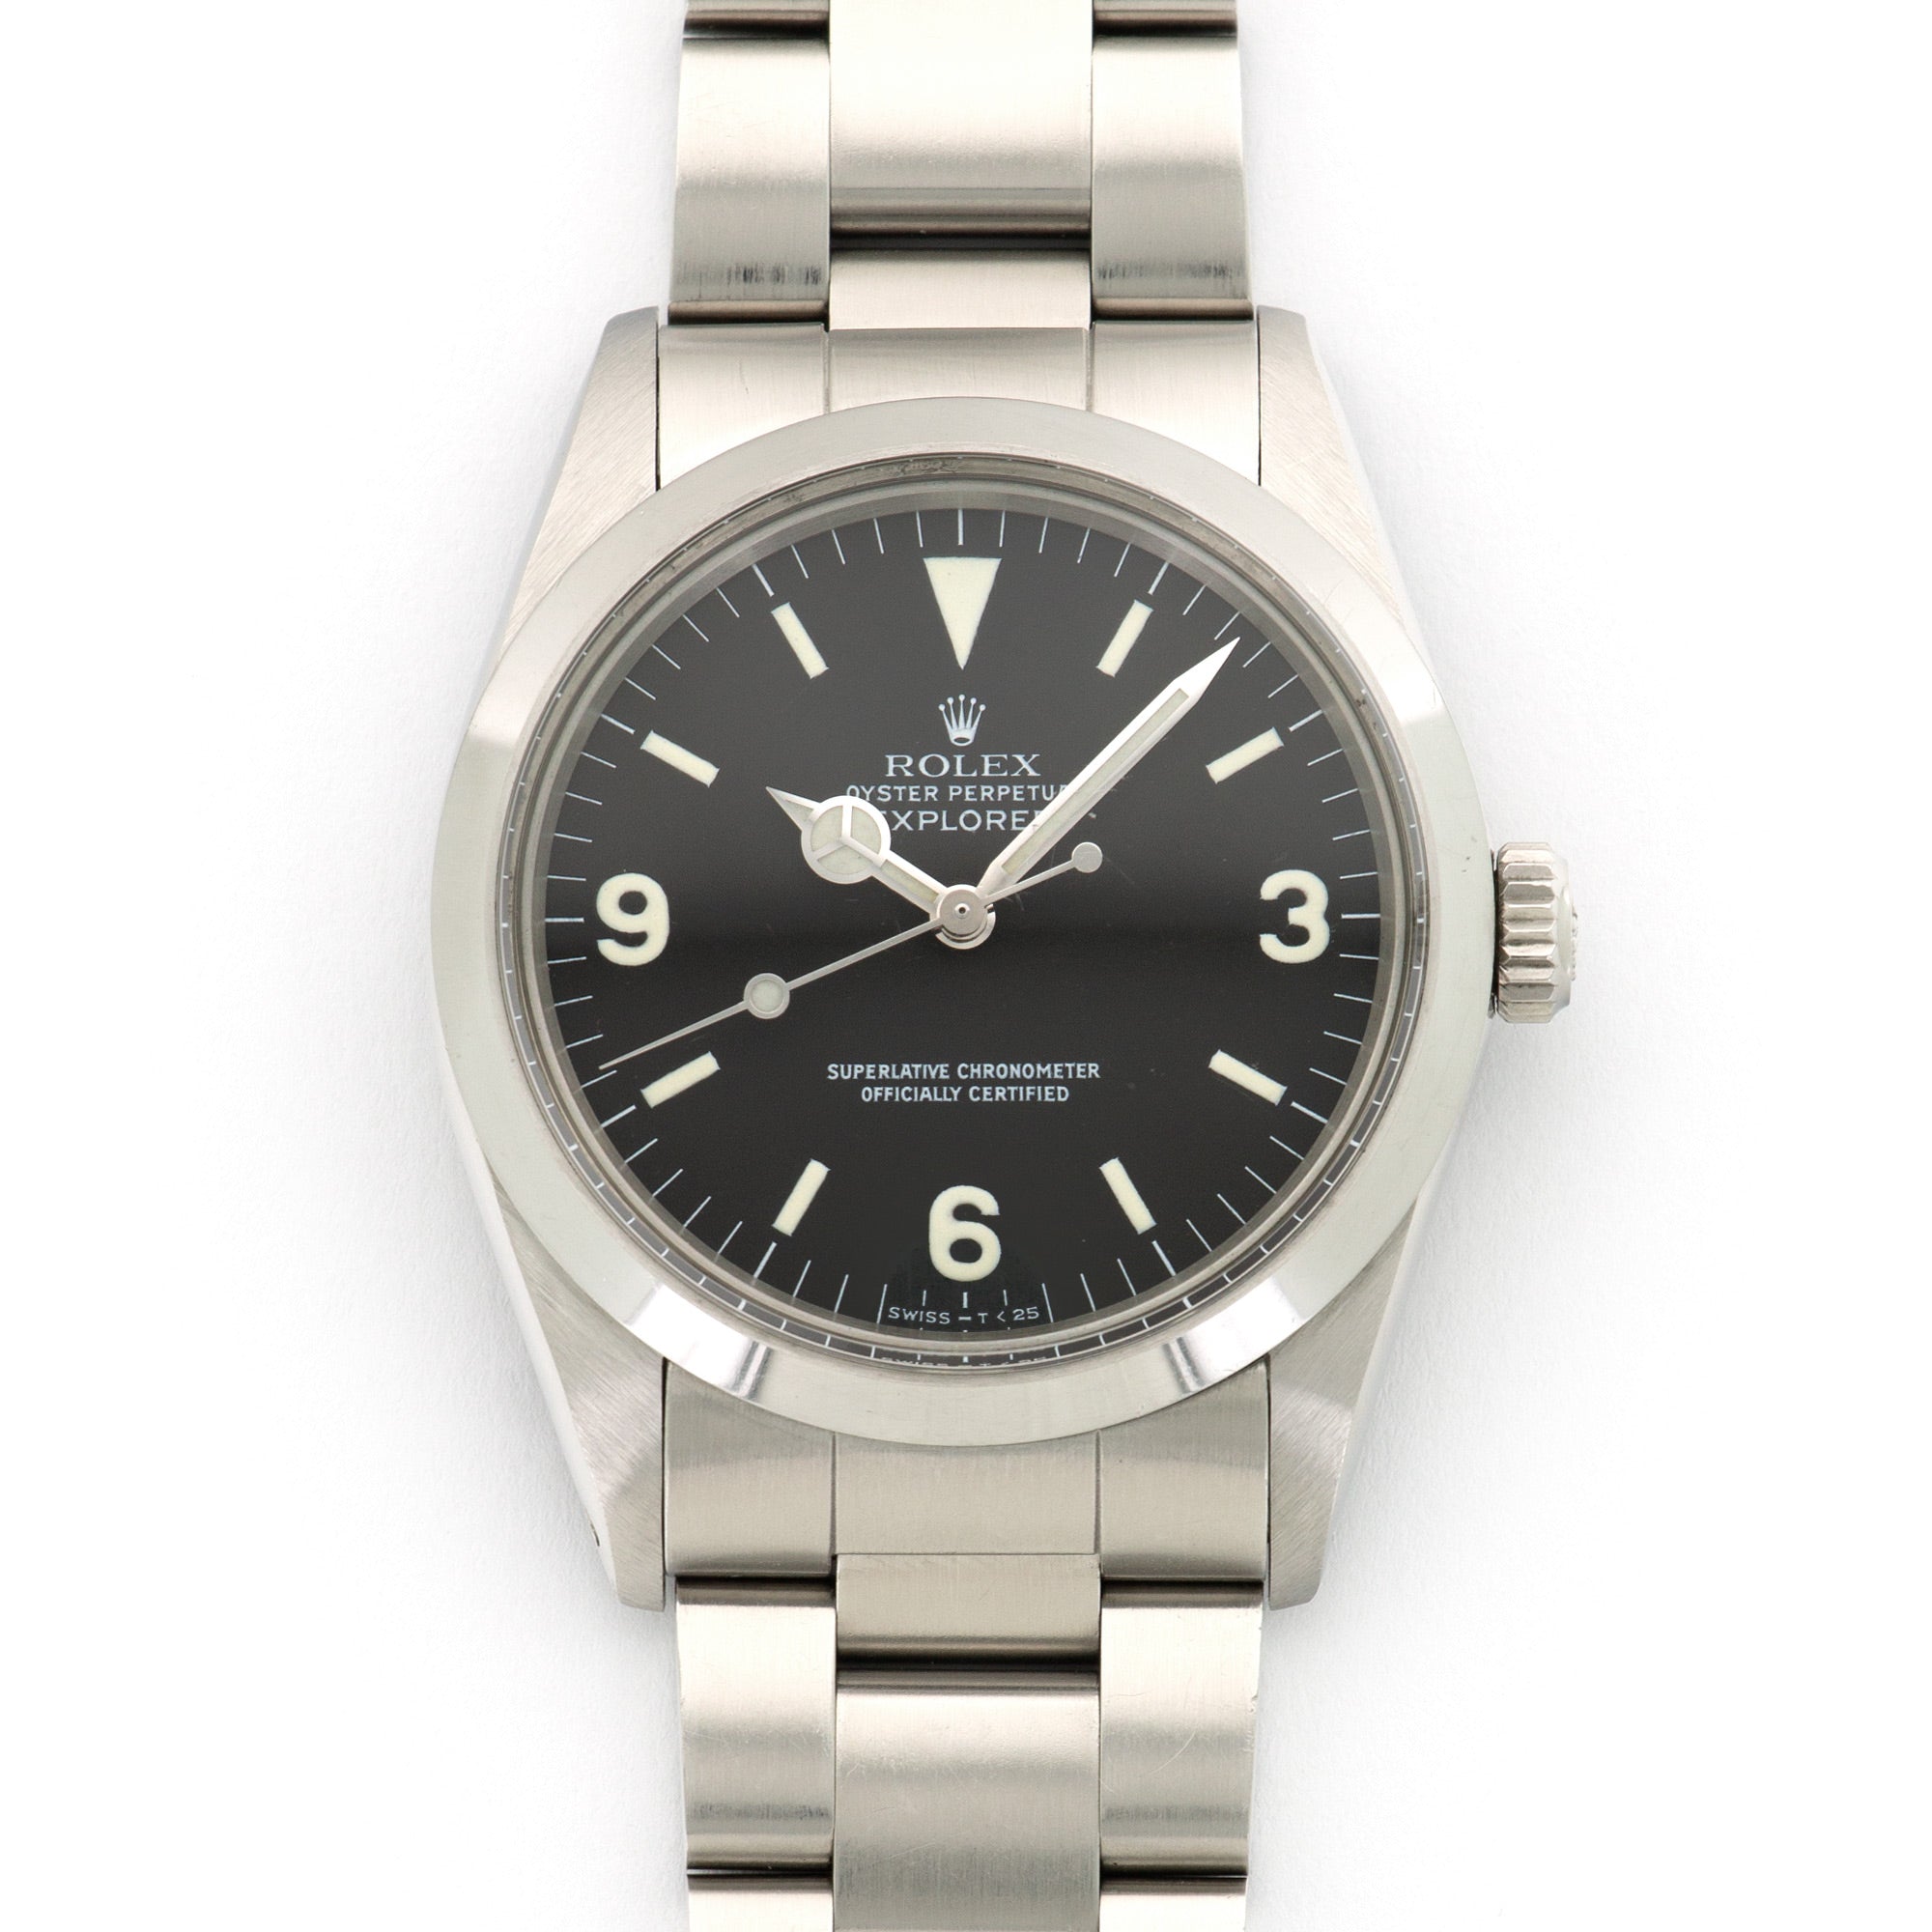 Rolex - Rolex Explorer R-Series Watch Ref. 1016 - The Keystone Watches